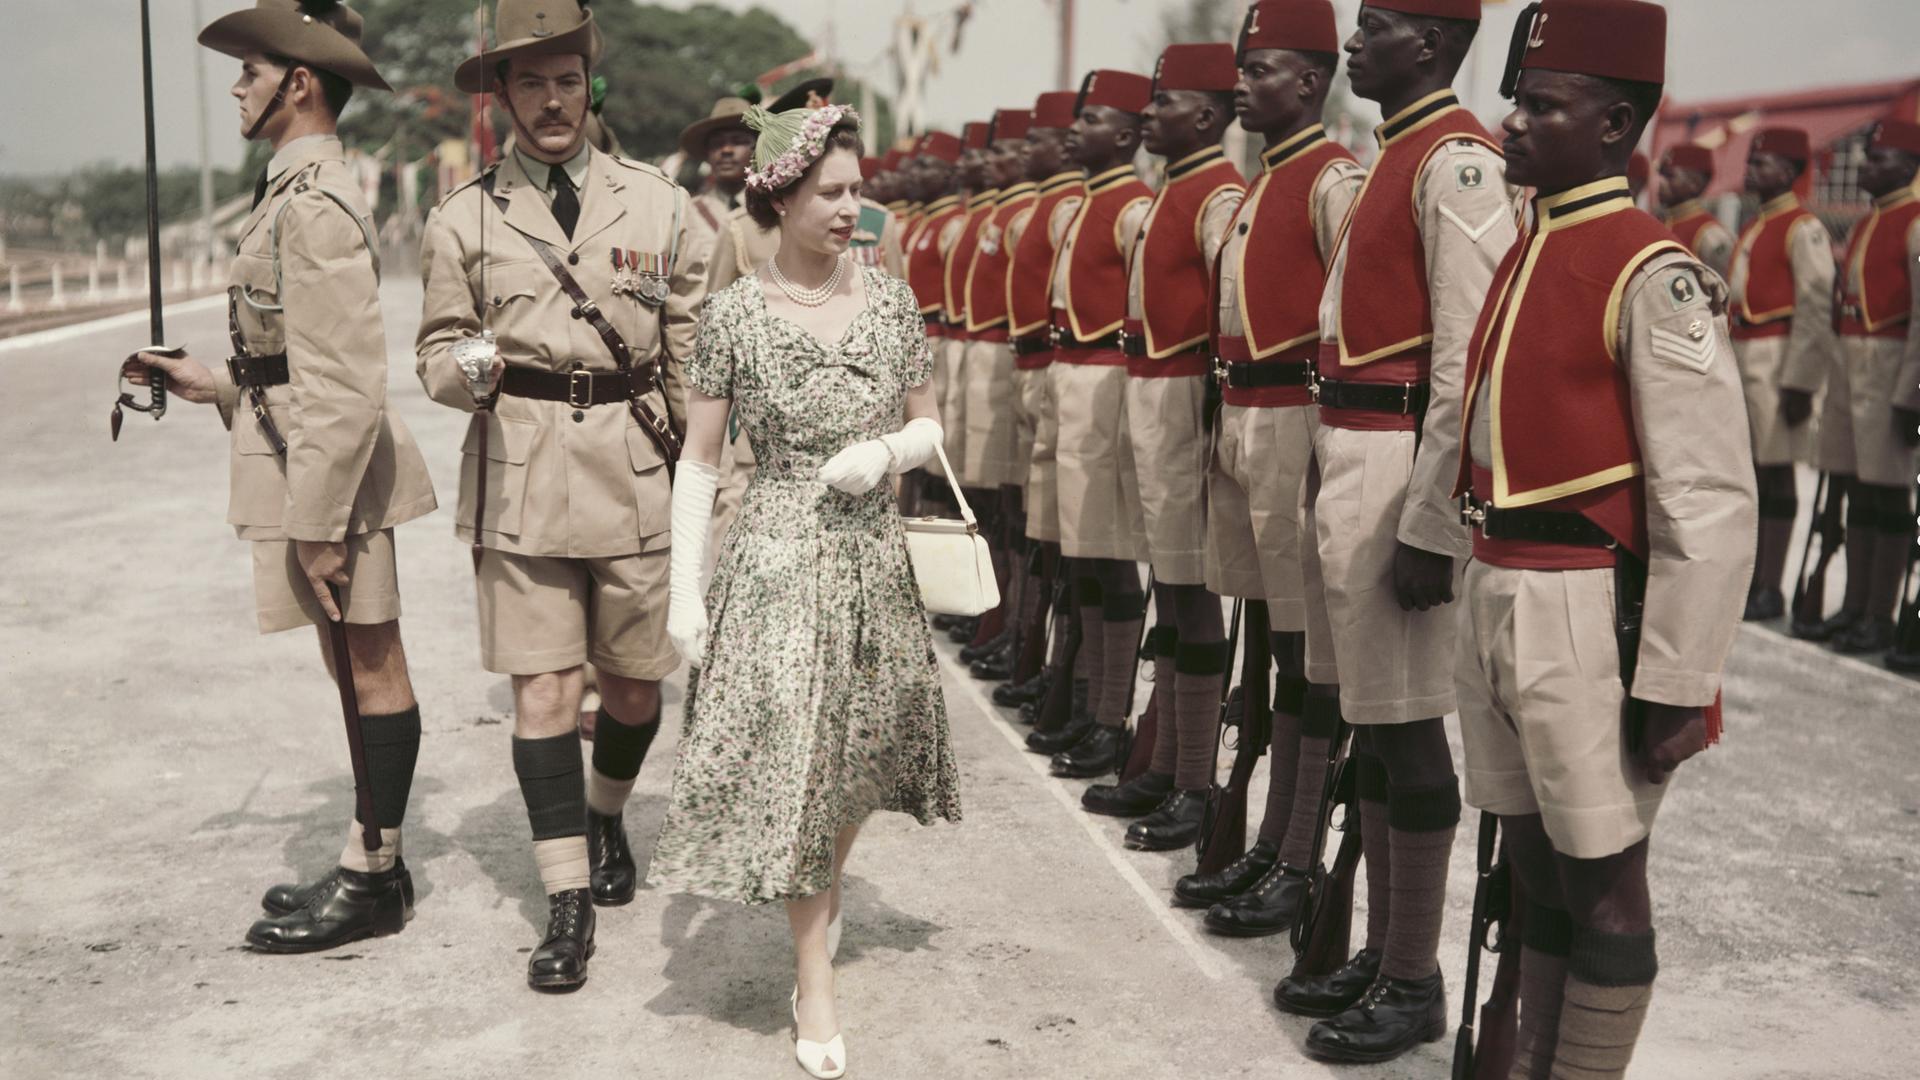 Königin Elizabeth II. inspiziert während ihrer Commonwealth-Reise 1956 nigerianische Soldaten des sogenannten königlichen Nigeria Regiments (Royal West African Frontier Force).